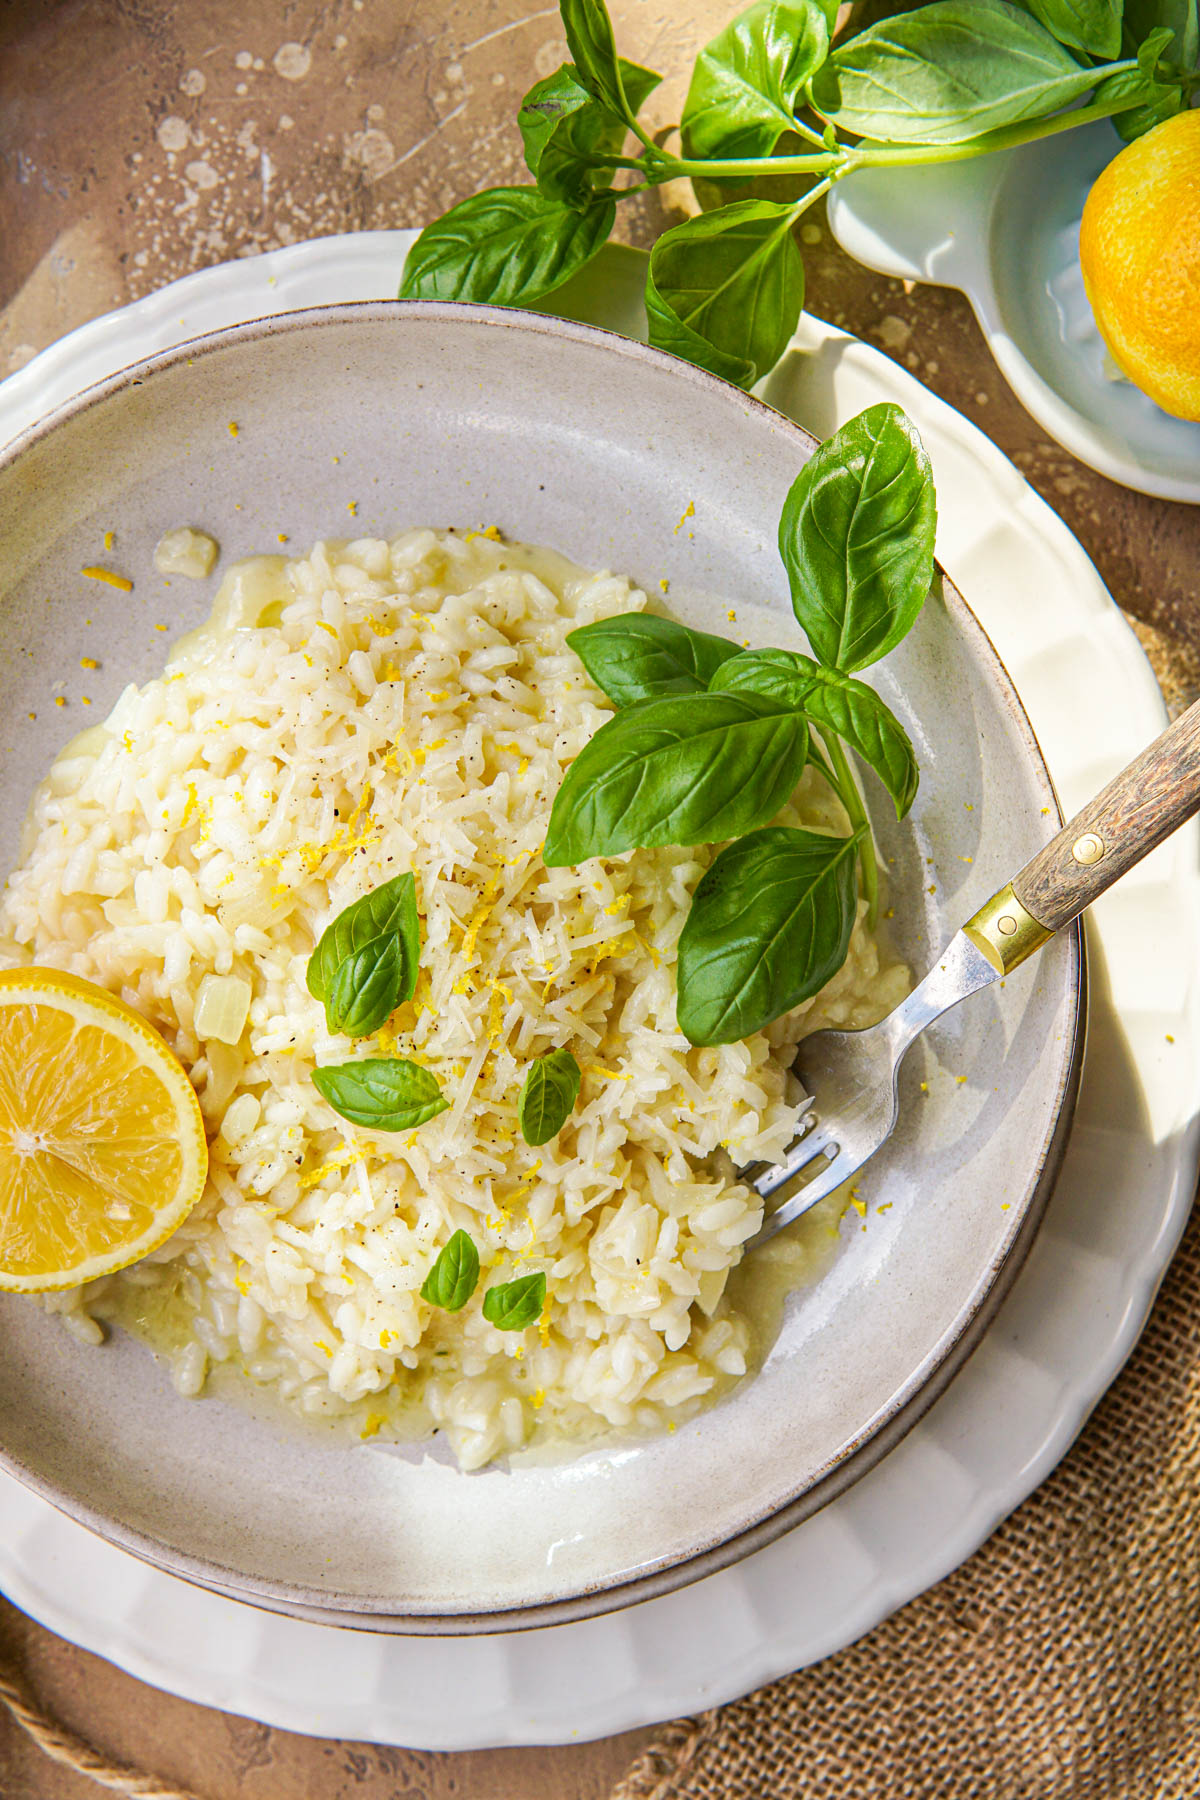 Recept voor vegetarische risotto met citroen